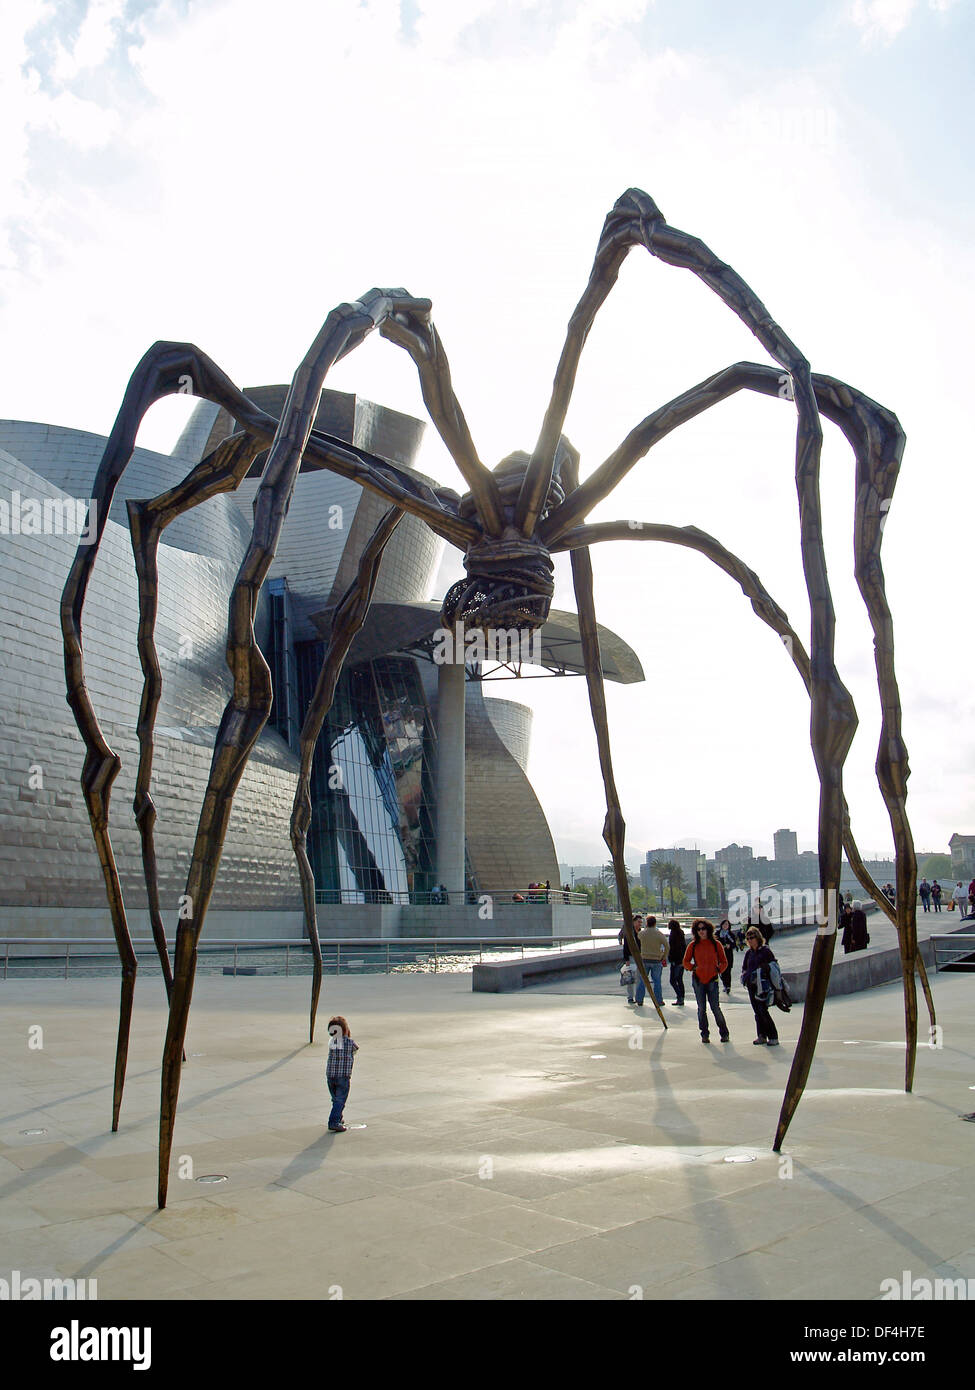 Die Spinne Skulptur "Maman" außerhalb von The Guggenheim Museum, Bilbao,  Spanien Stockfotografie - Alamy